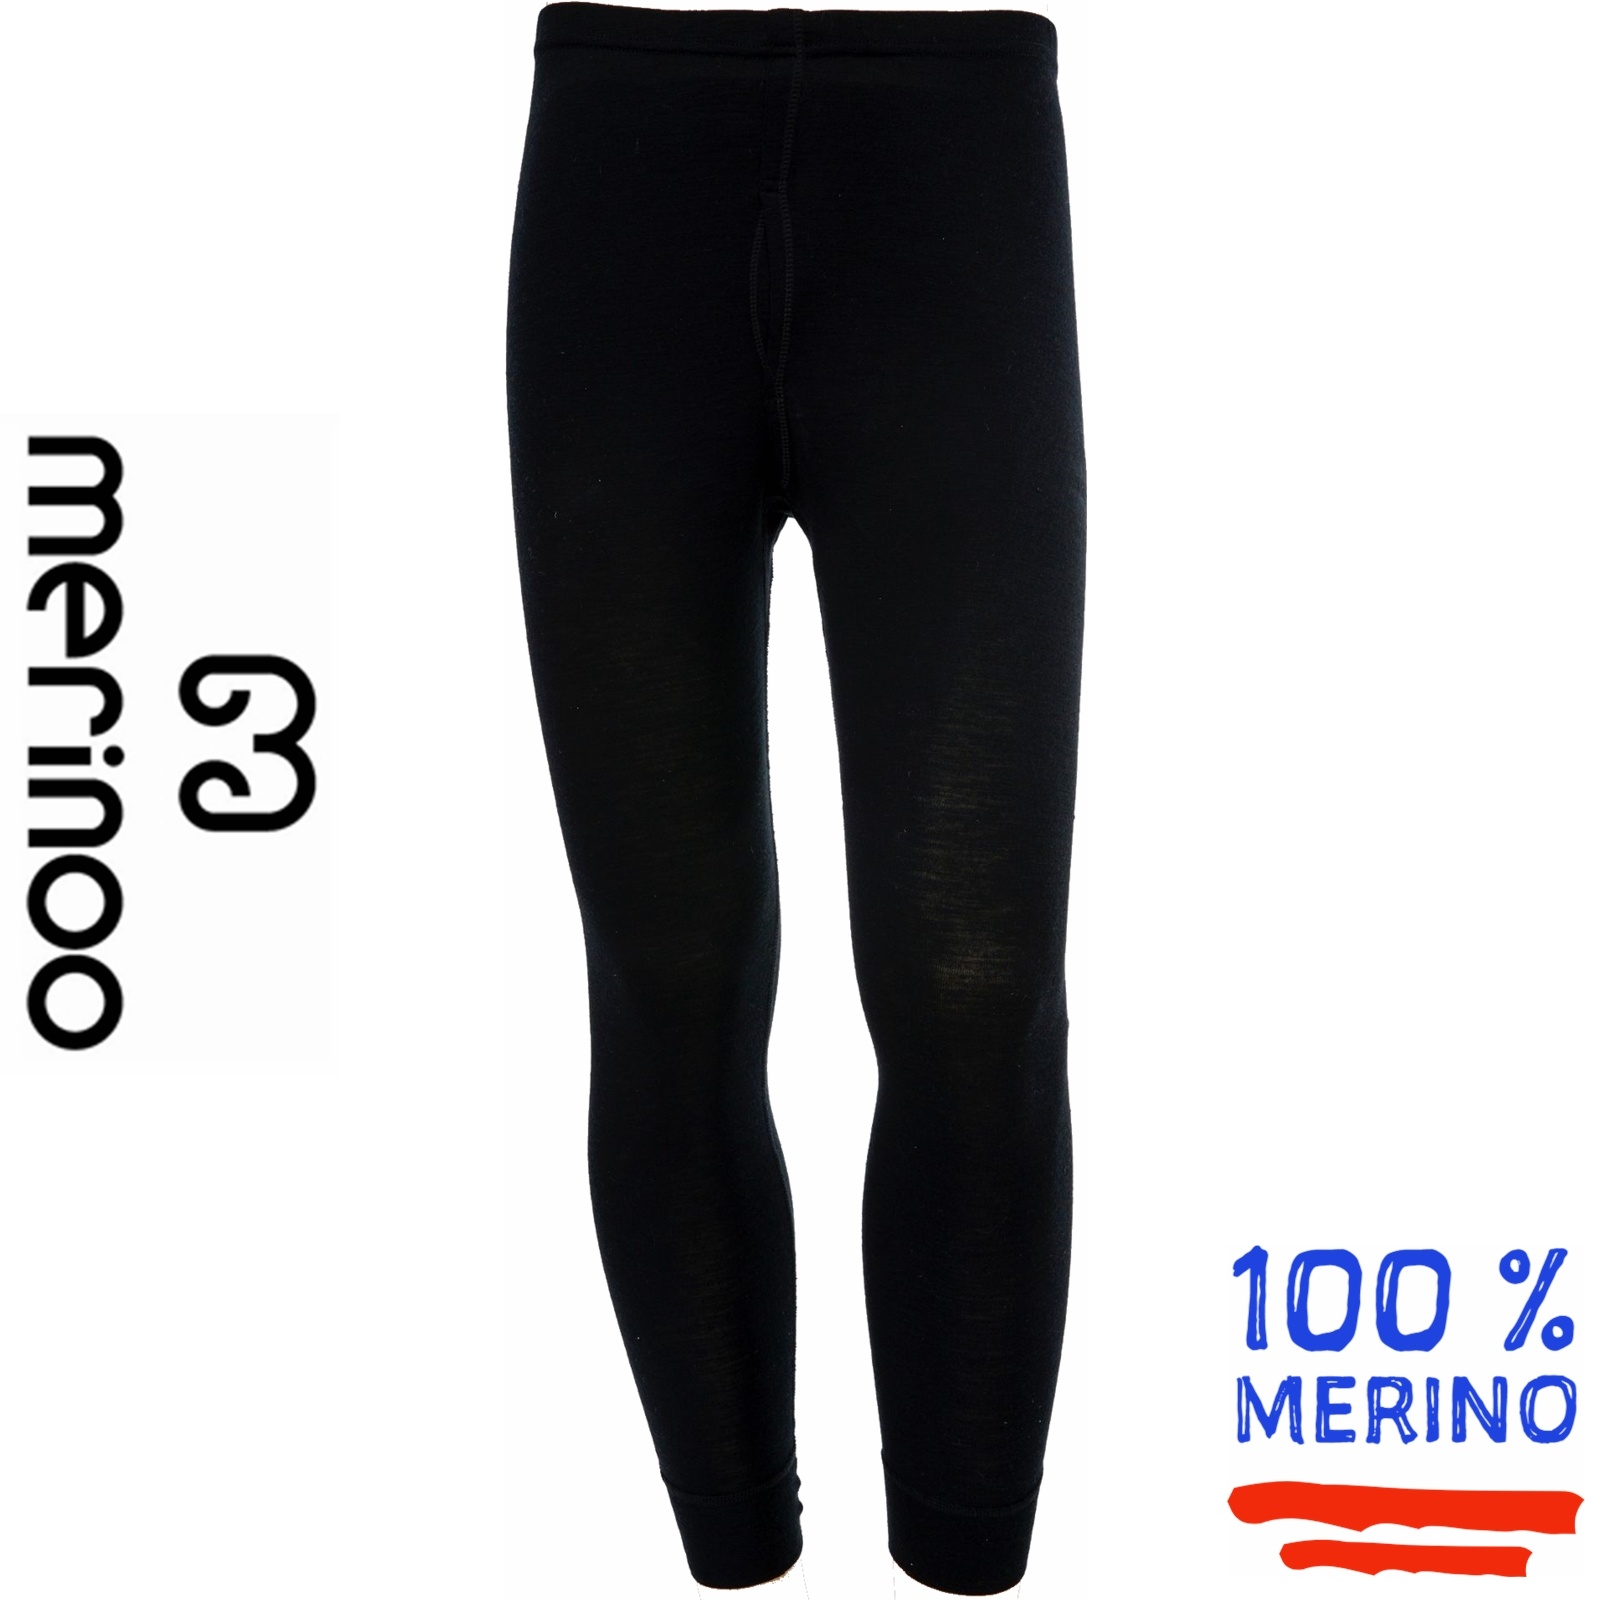 Merinoo (100% merinowol) Merinoo | 200 | Heren thermobroek